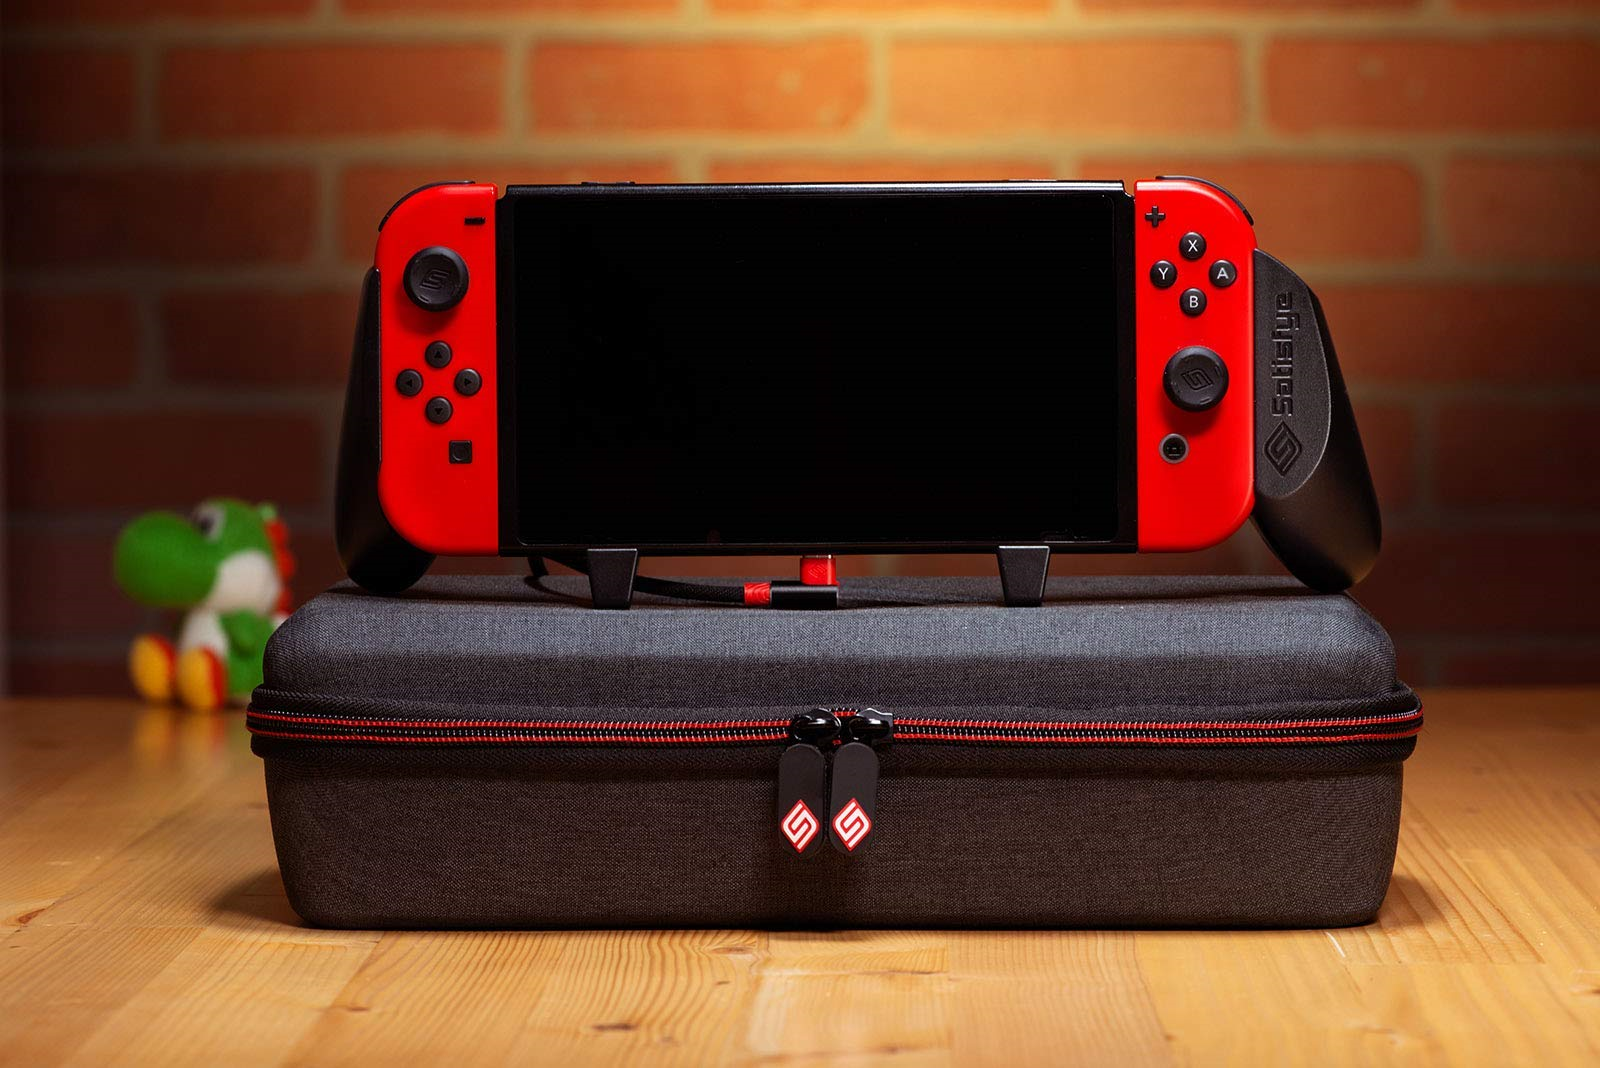 L'impugnatura e la custodia da gioco Satisfye, i migliori accessori Nintendo Switch.